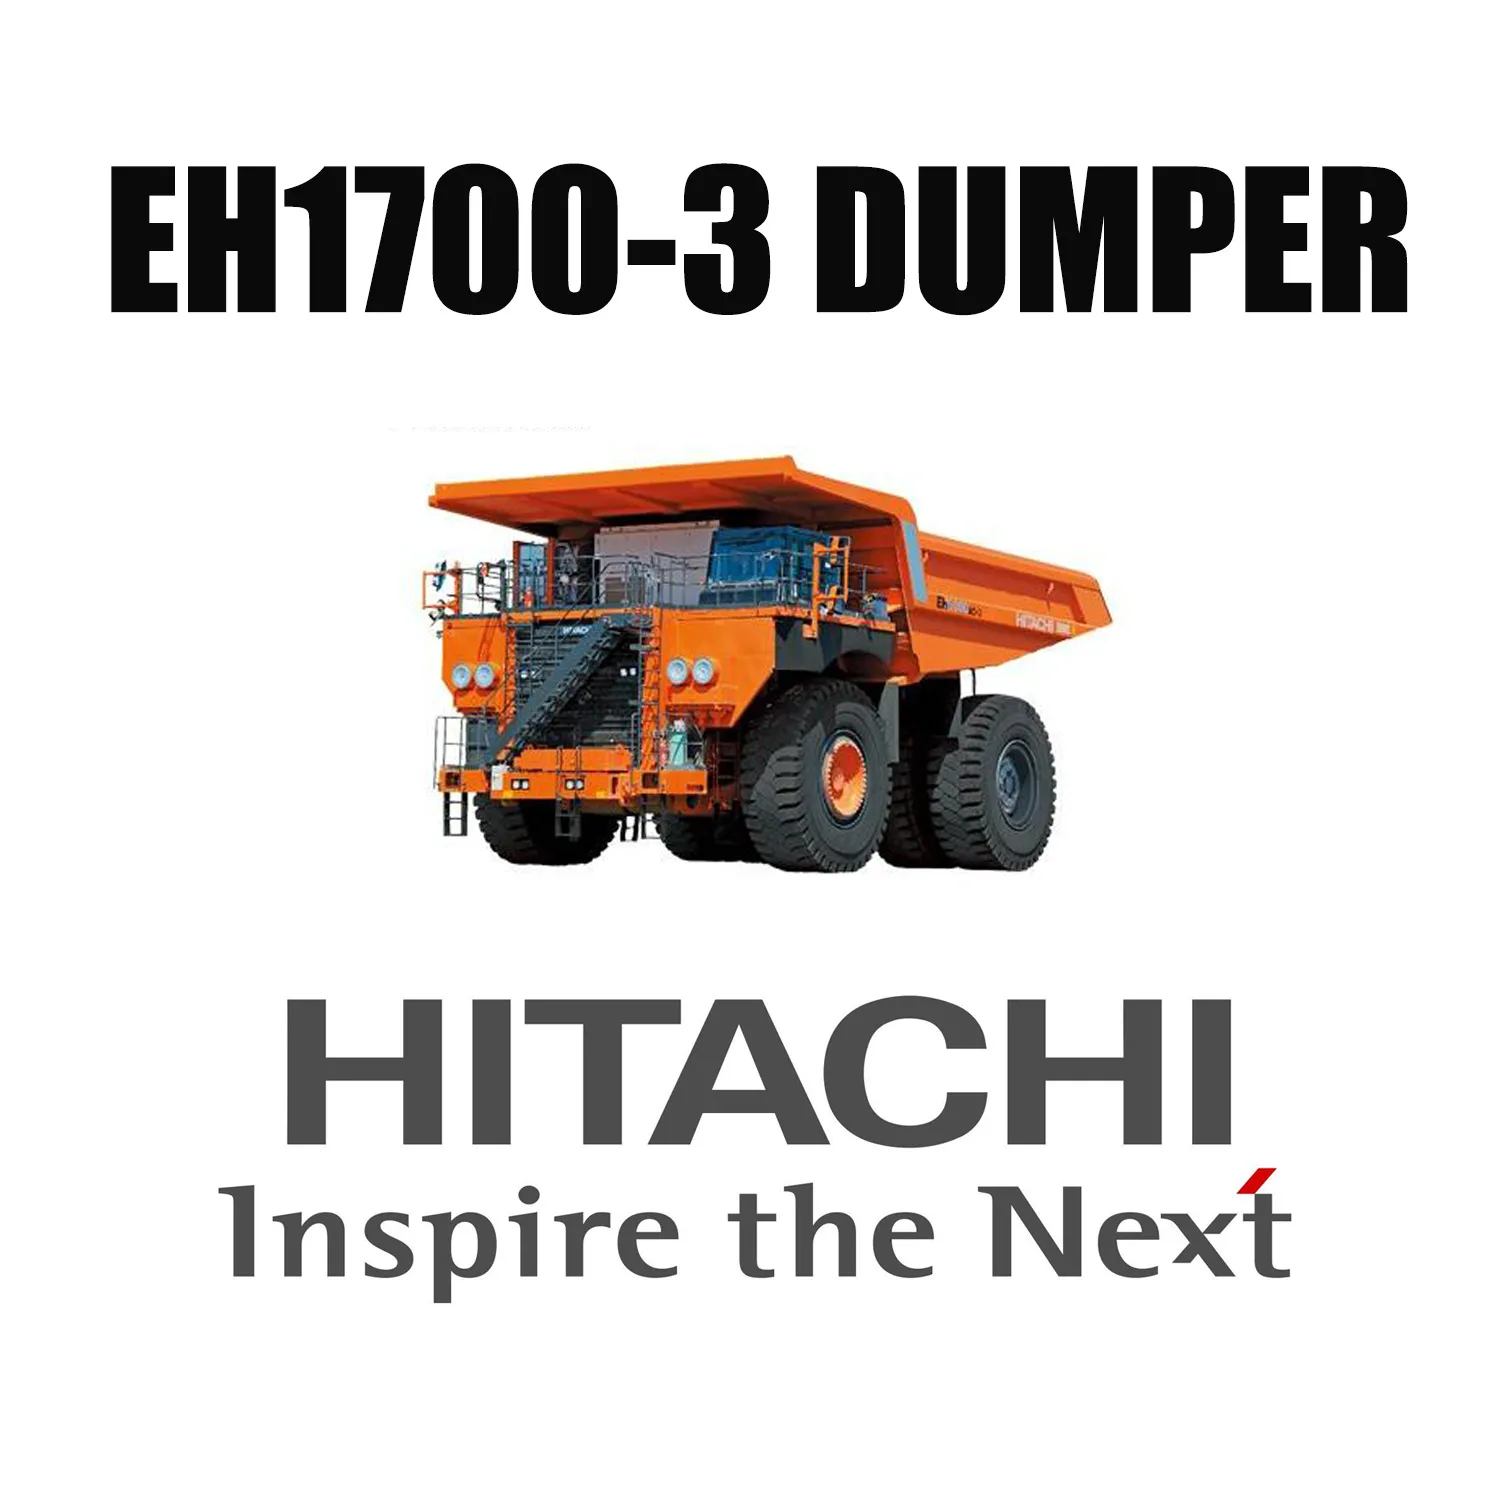 Xe tải Hitachi Haul EH1700-3 được trang bị Lốp OTR khổng lồ LUAN 27.00R49